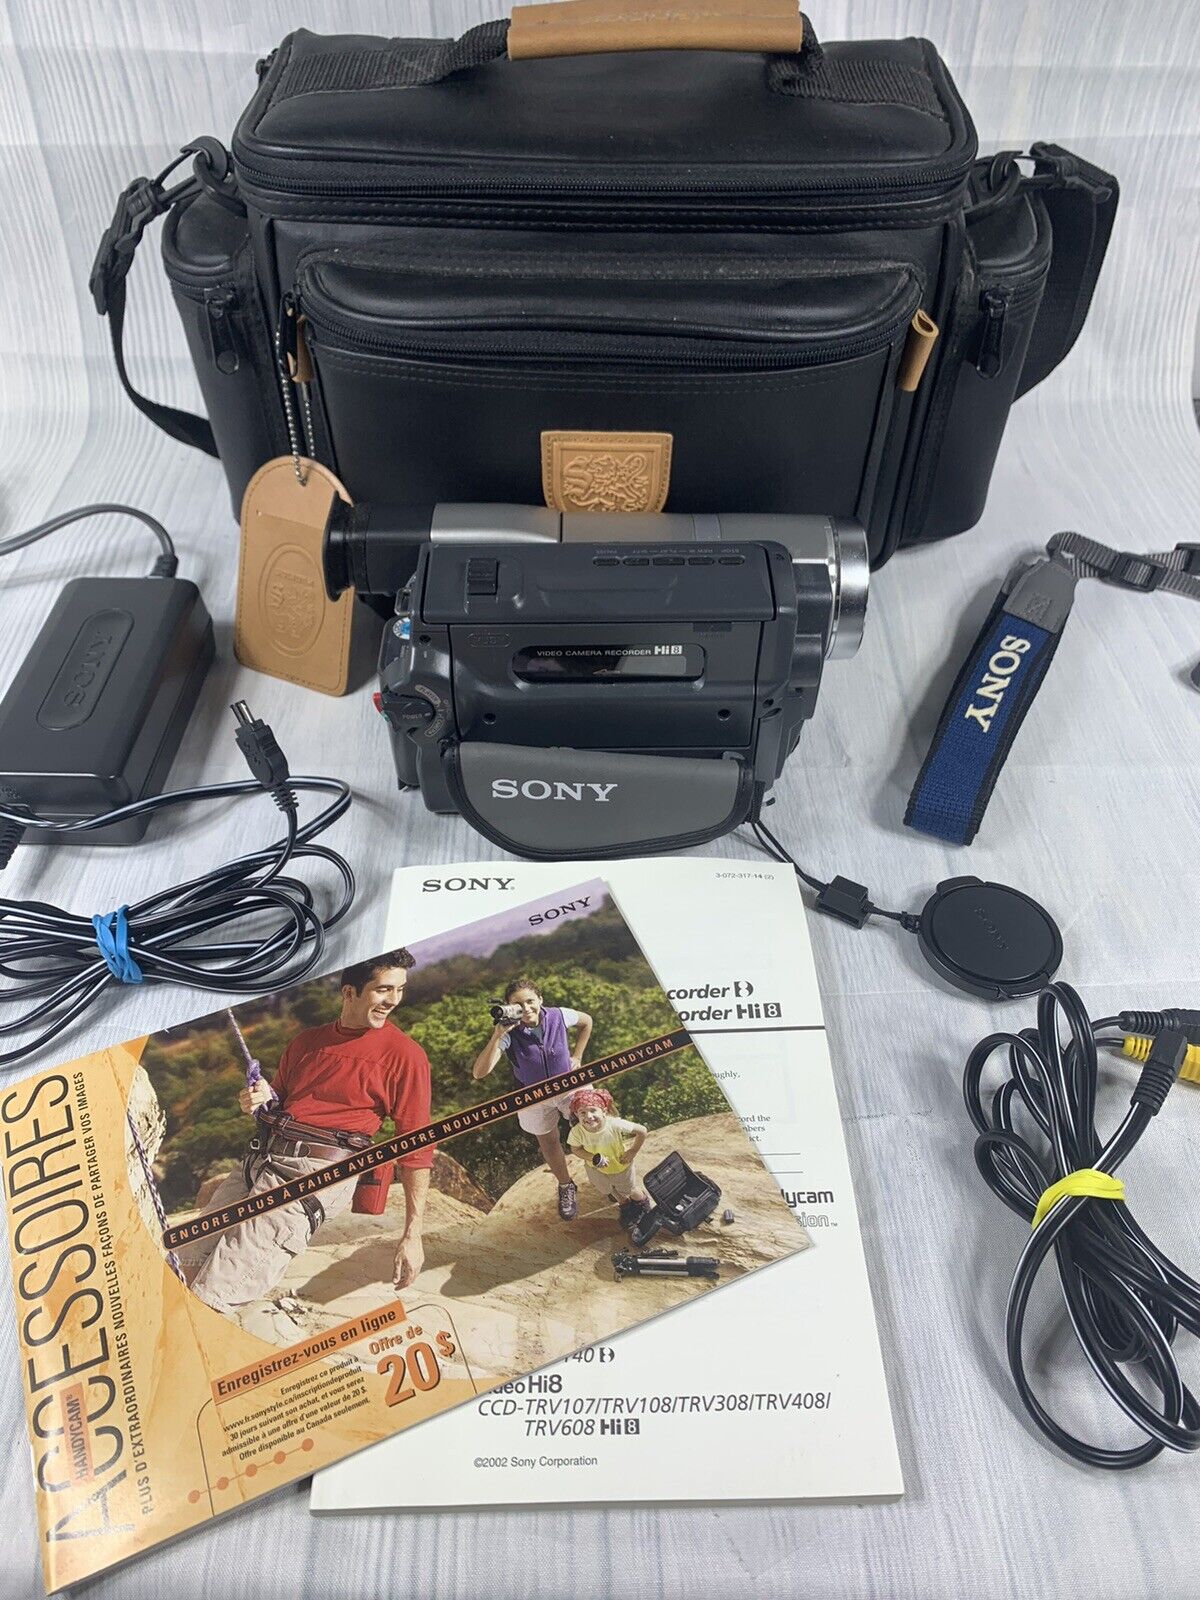 Sony Handycam CCD-TRV108 Hi-8 Analog Camcorder for sale online | eBay